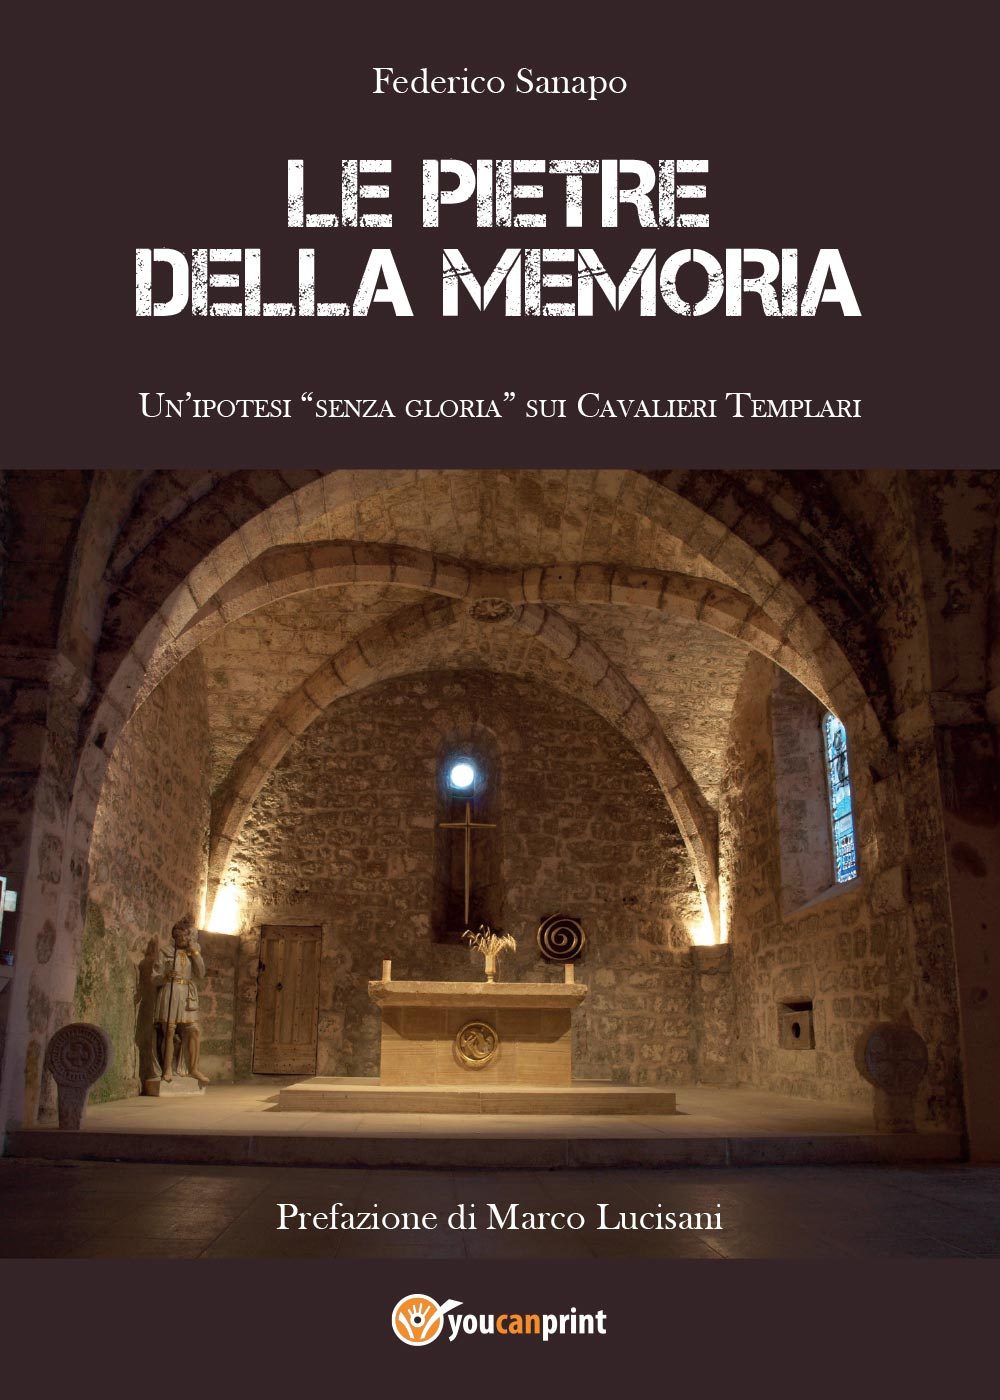 Libri Federico Sanapo - Le Pietre Della Memoria NUOVO SIGILLATO, EDIZIONE DEL 01/09/2014 SUBITO DISPONIBILE